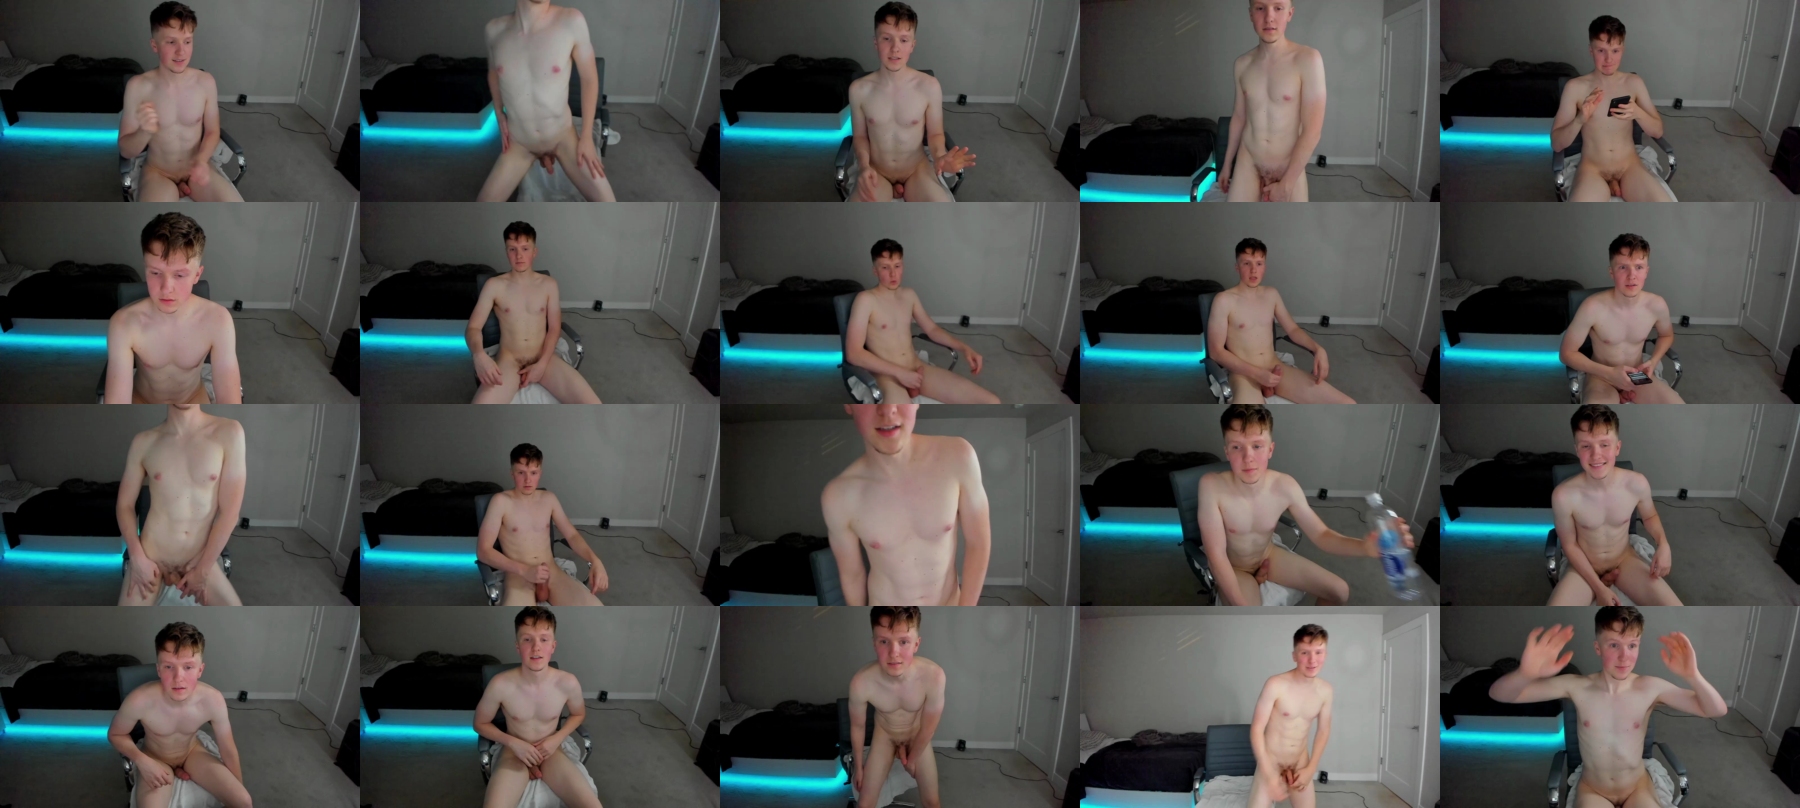 Mr_Frost22  09-09-2021 Male Webcam